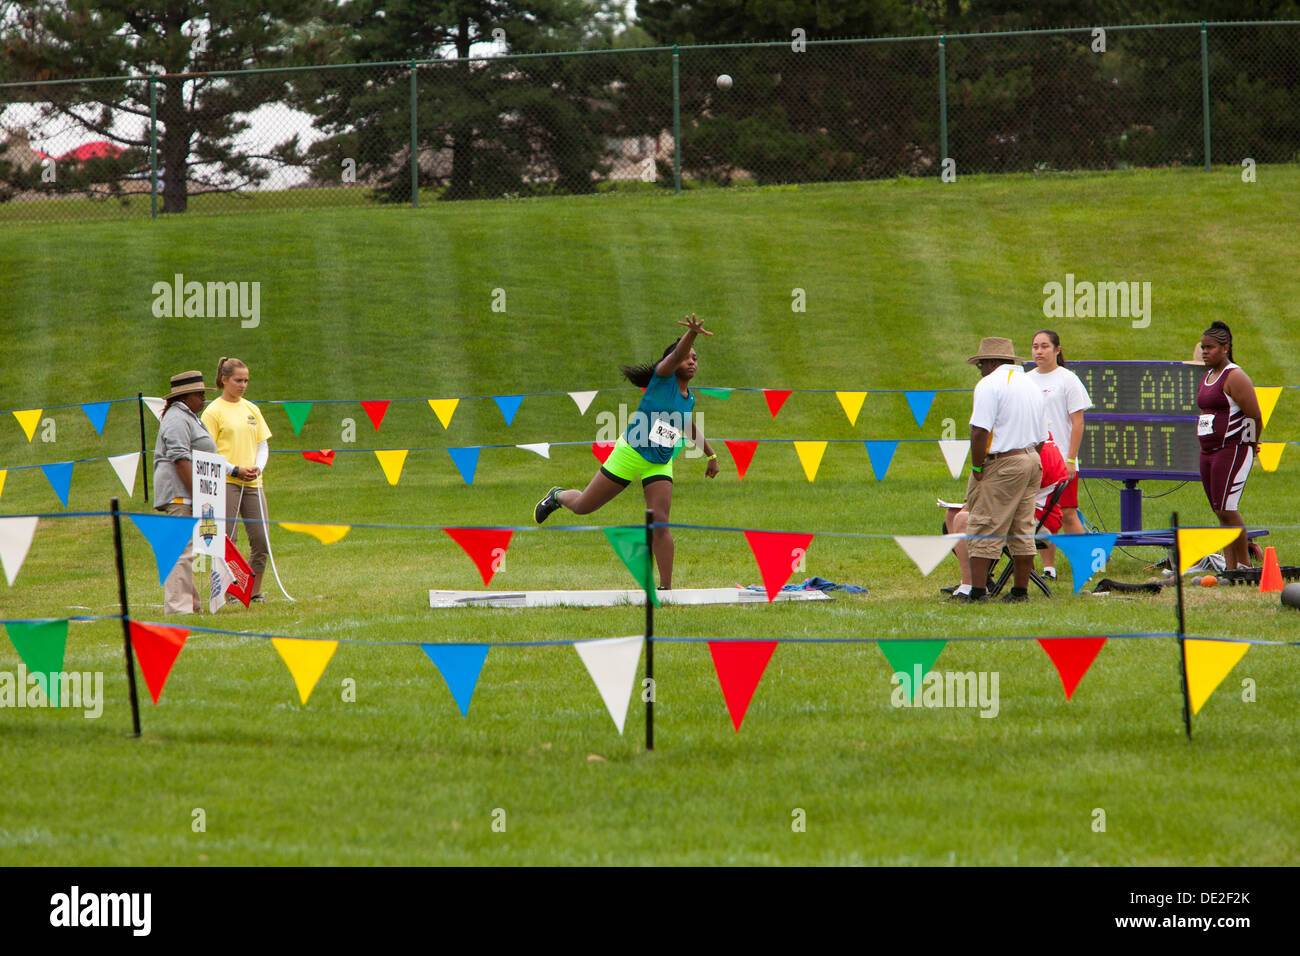 Ypsilanti, Michigan - Kugelstoß-Wettbewerb während der Leichtathletik-Veranstaltungen bei den Olympischen Spielen in AAU Junior. Stockfoto